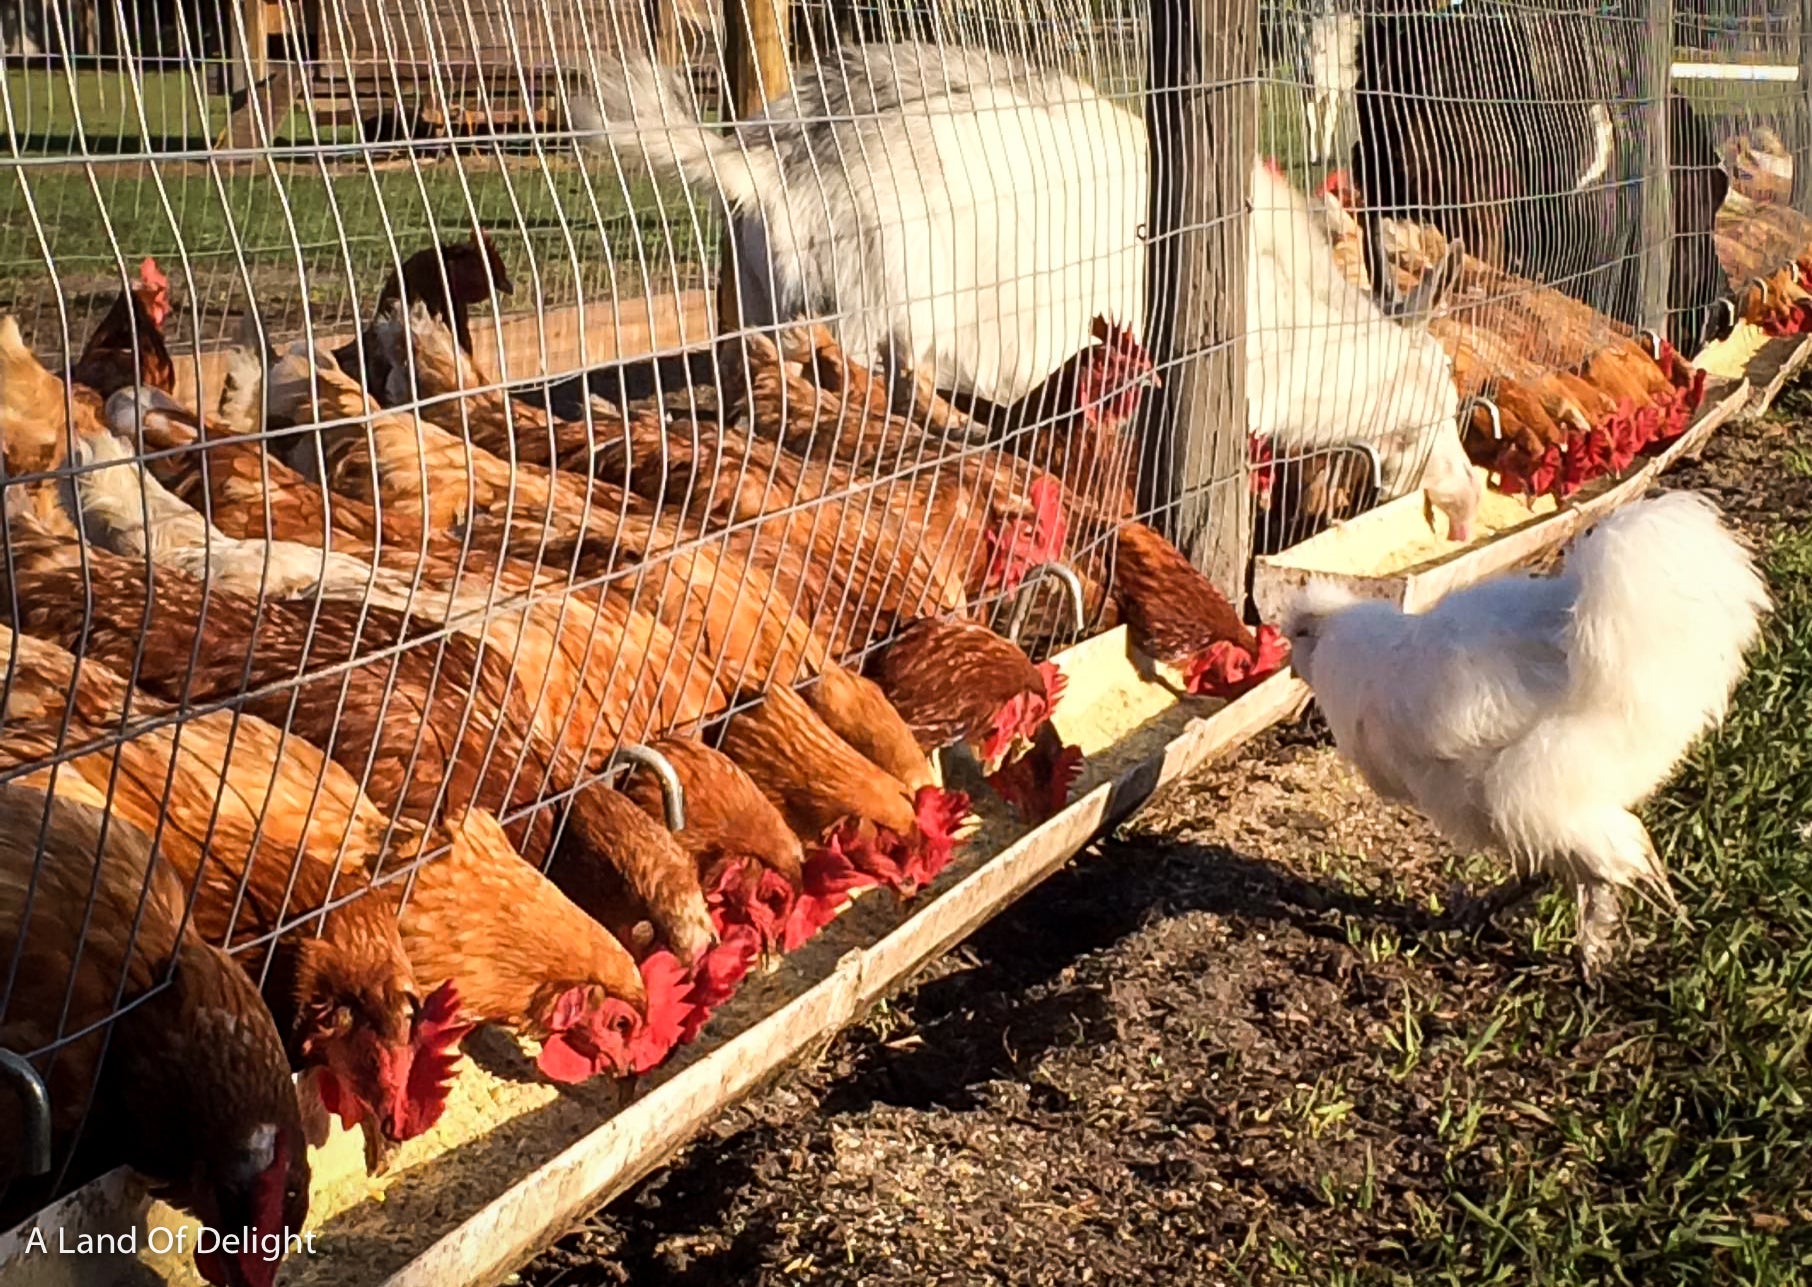 Chickens feeding in open field